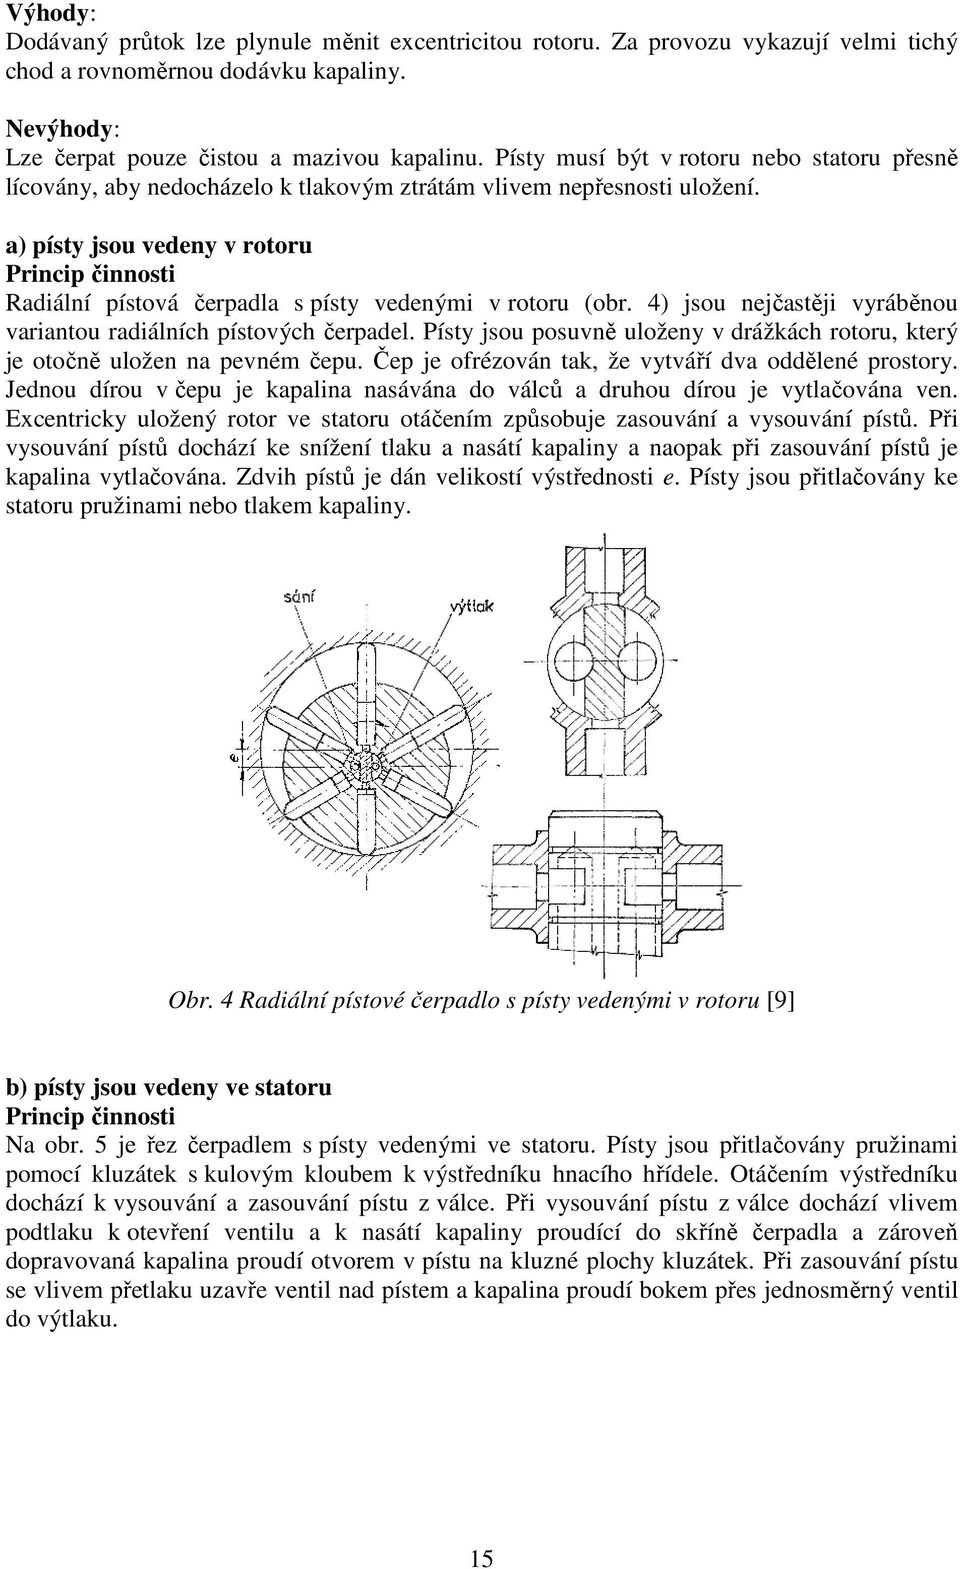 a) písty jsou vedeny v rotoru Princip činnosti Radiální pístová čerpadla s písty vedenými v rotoru (obr. 4) jsou nejčastěji vyráběnou variantou radiálních pístových čerpadel.